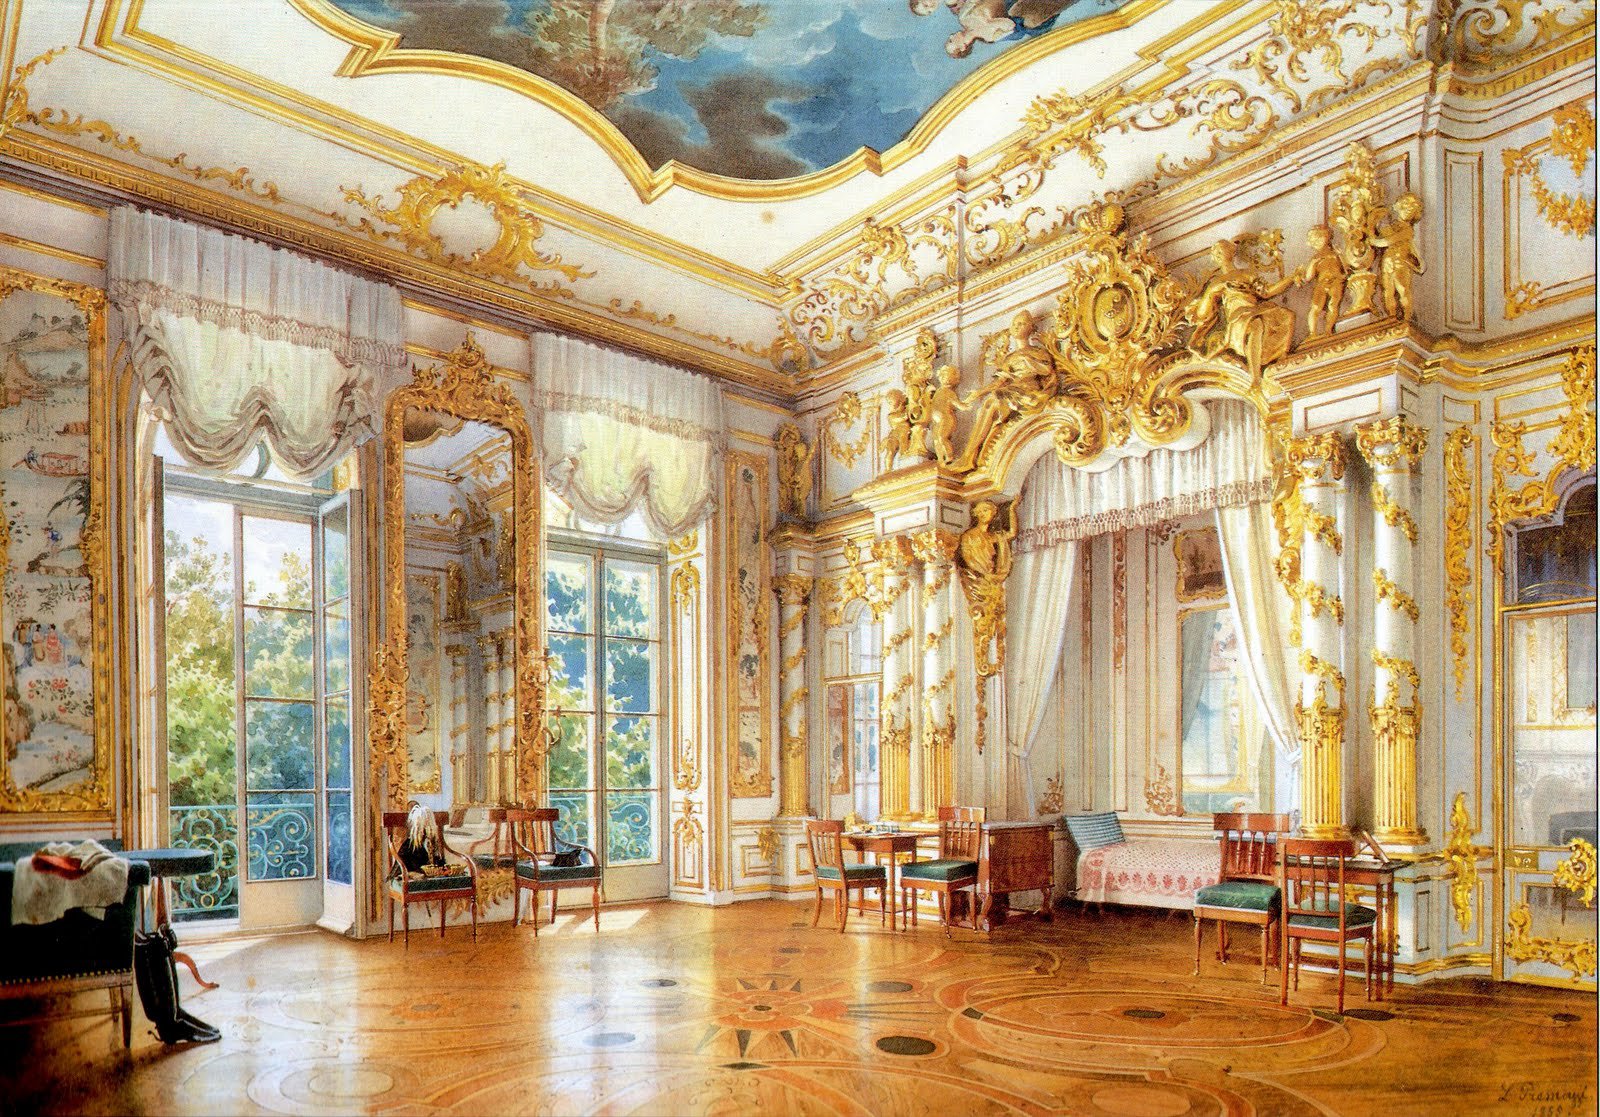 Grand Catherine Palace.jpg